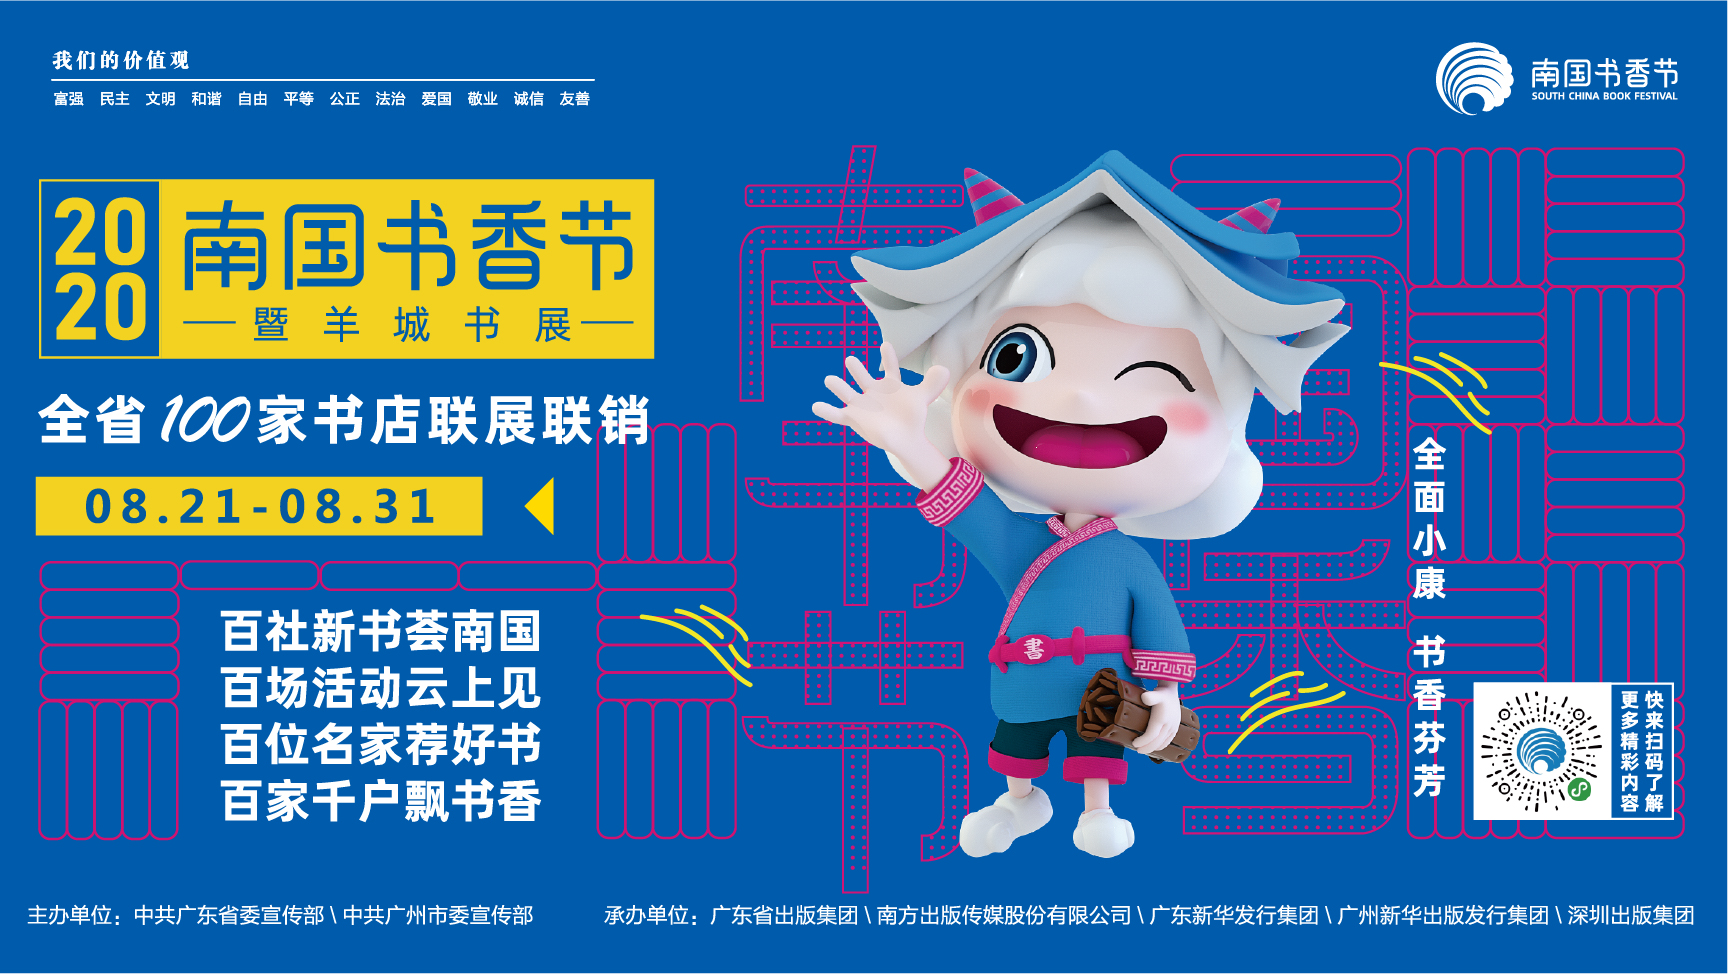 8月21日-31日，全省150个分会场联动，2020南国书香节如期举行